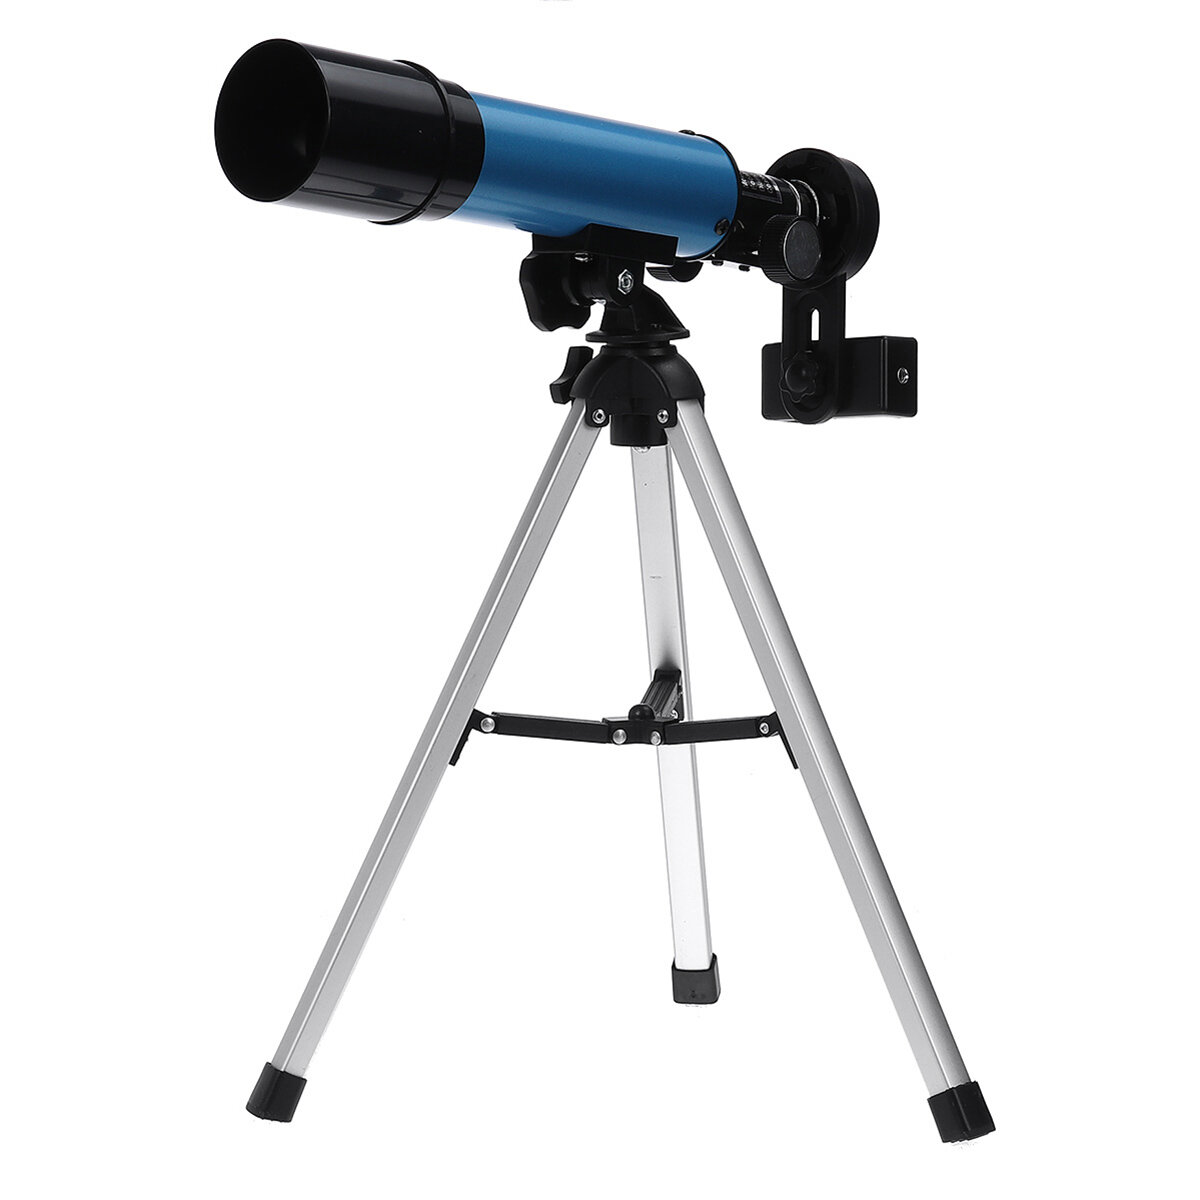 90X astronomisches Refraktor-Teleskop-Brechungs-Okular-Stativ für Kinder-Anfänger